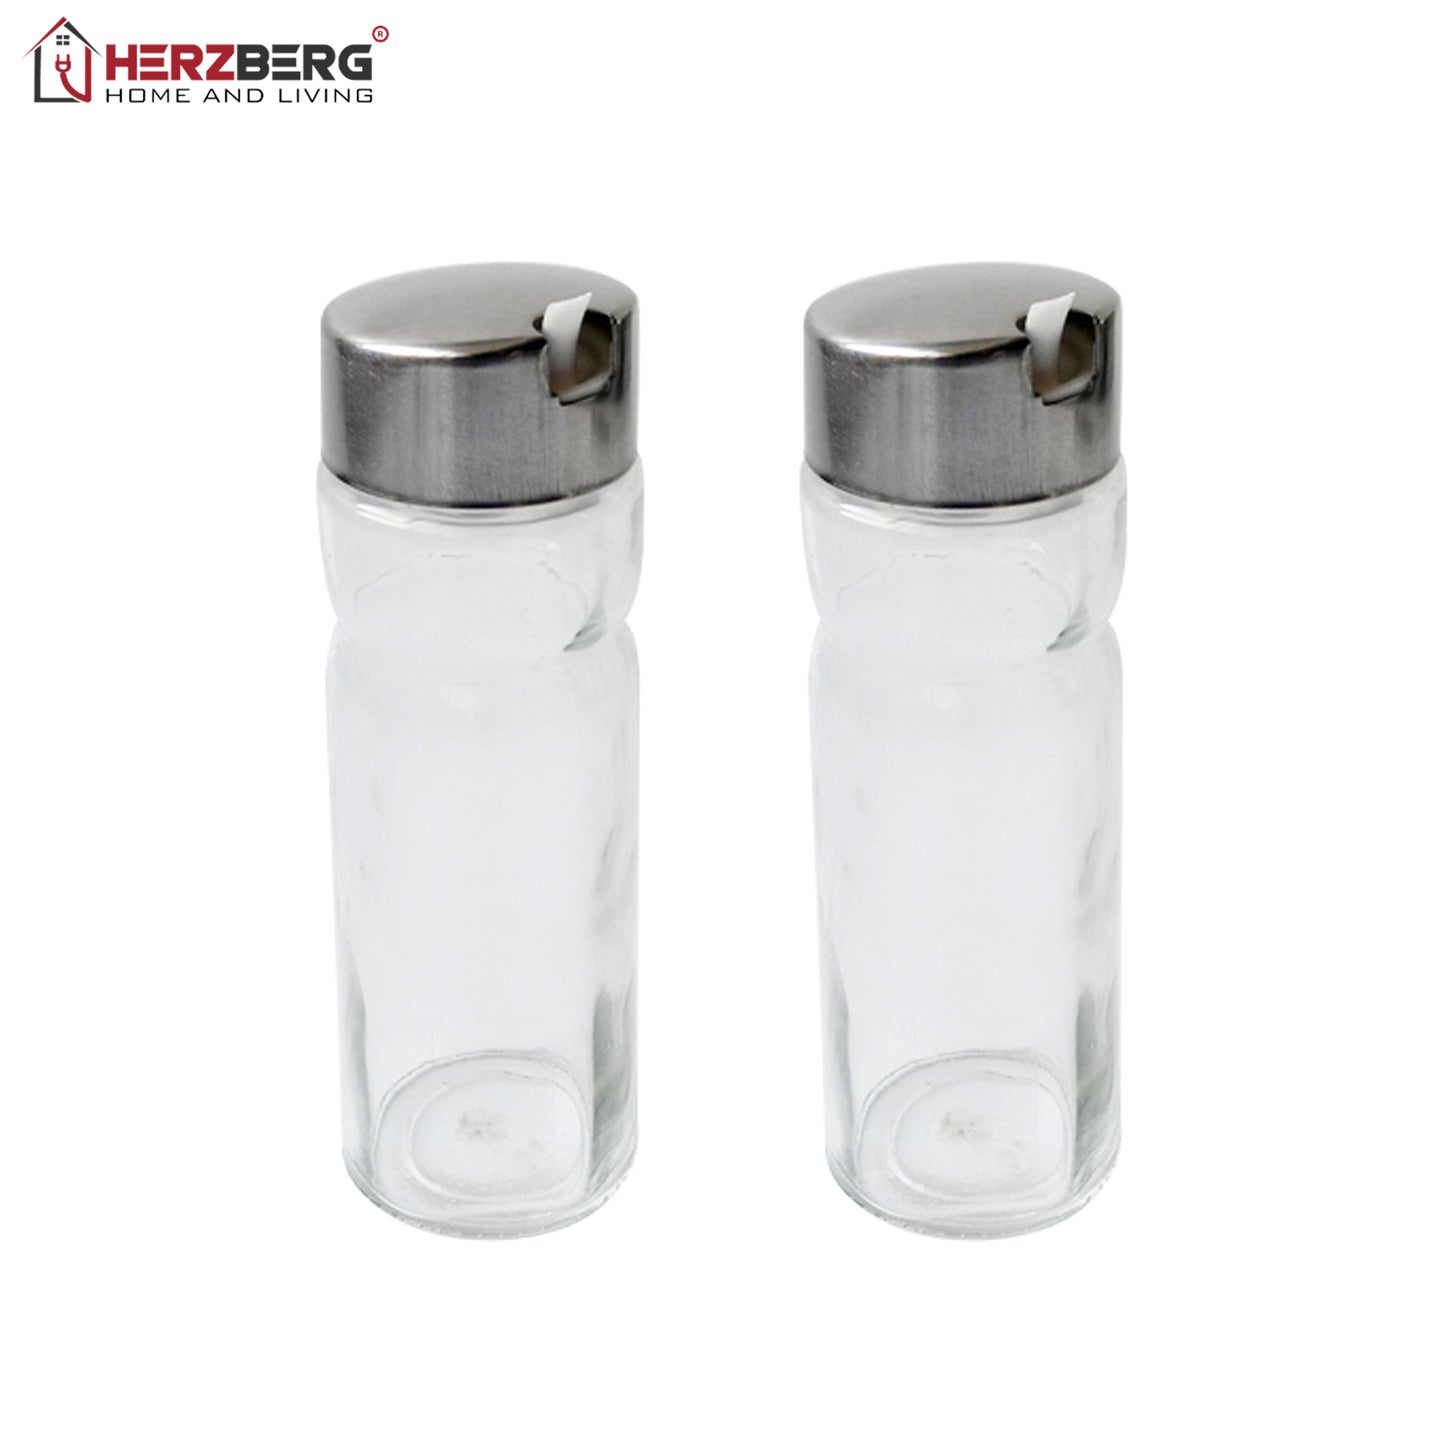 Herzbergb Stainless Steel Spice Rack with 4 Glass Jar Set